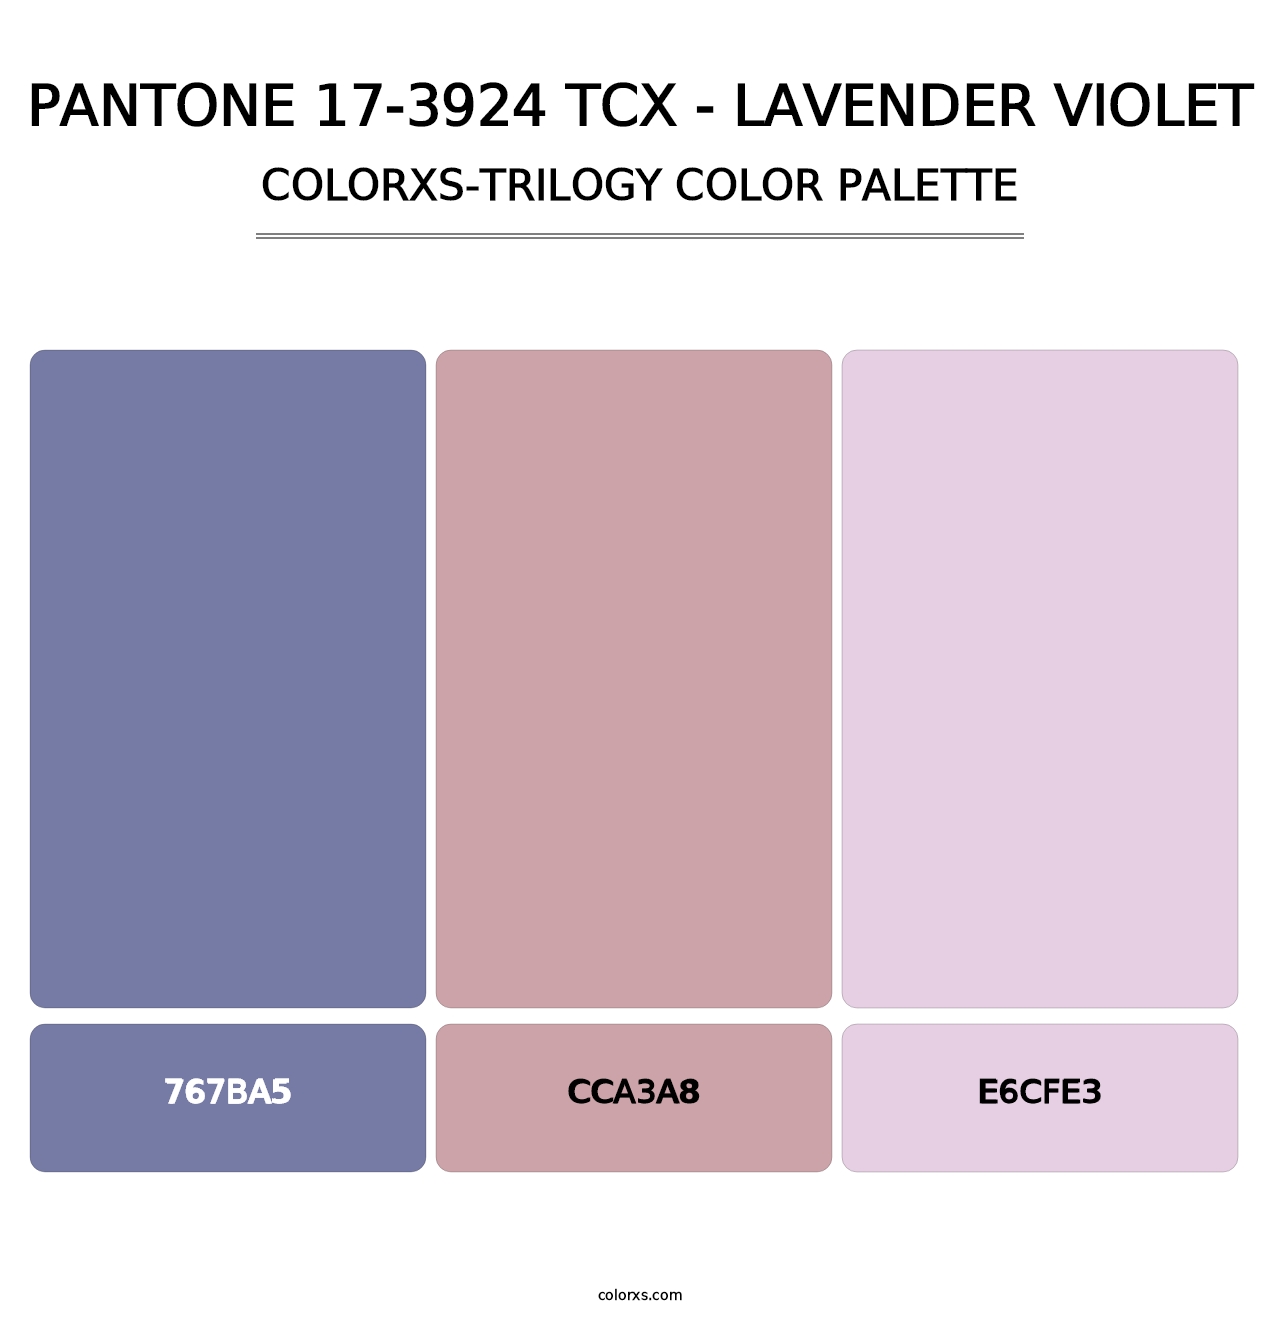 PANTONE 17-3924 TCX - Lavender Violet - Colorxs Trilogy Palette